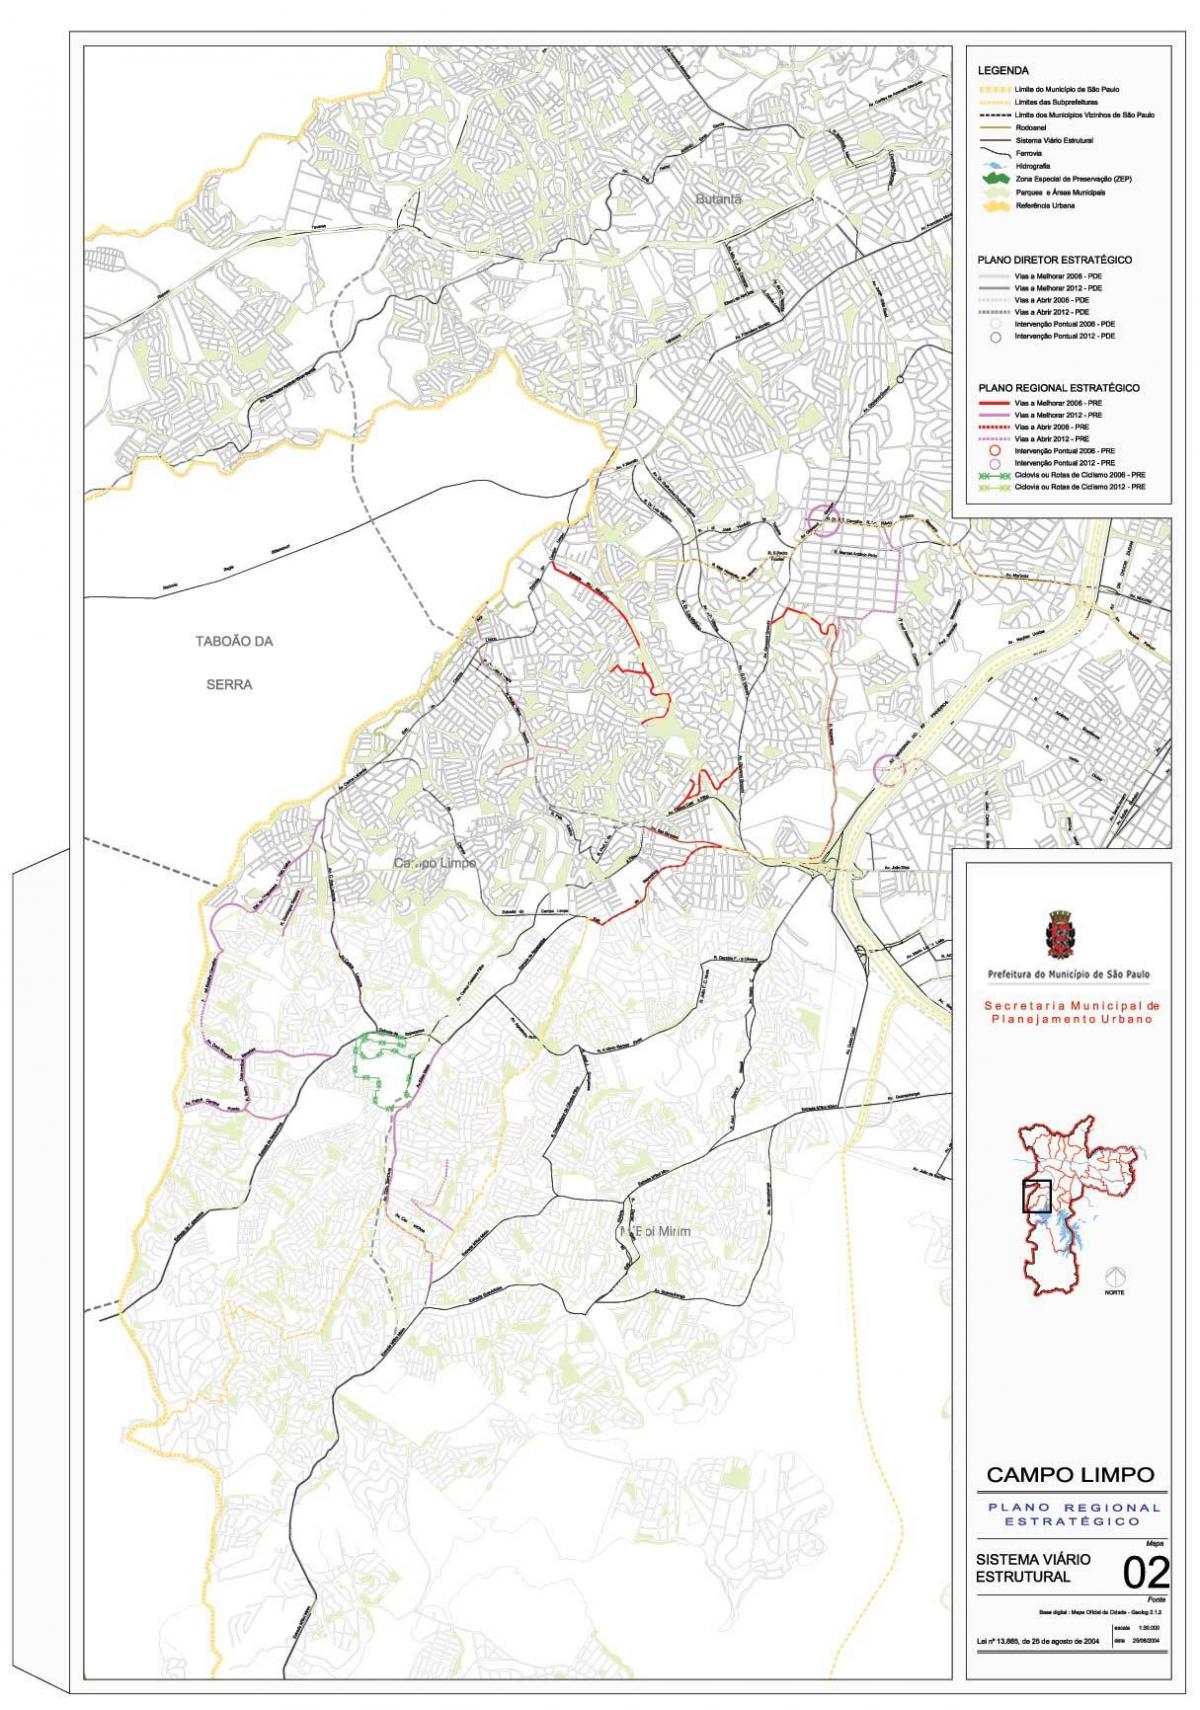 નકશો કેમ્પો Limpo સાઓ પાઉલો - રસ્તાઓ